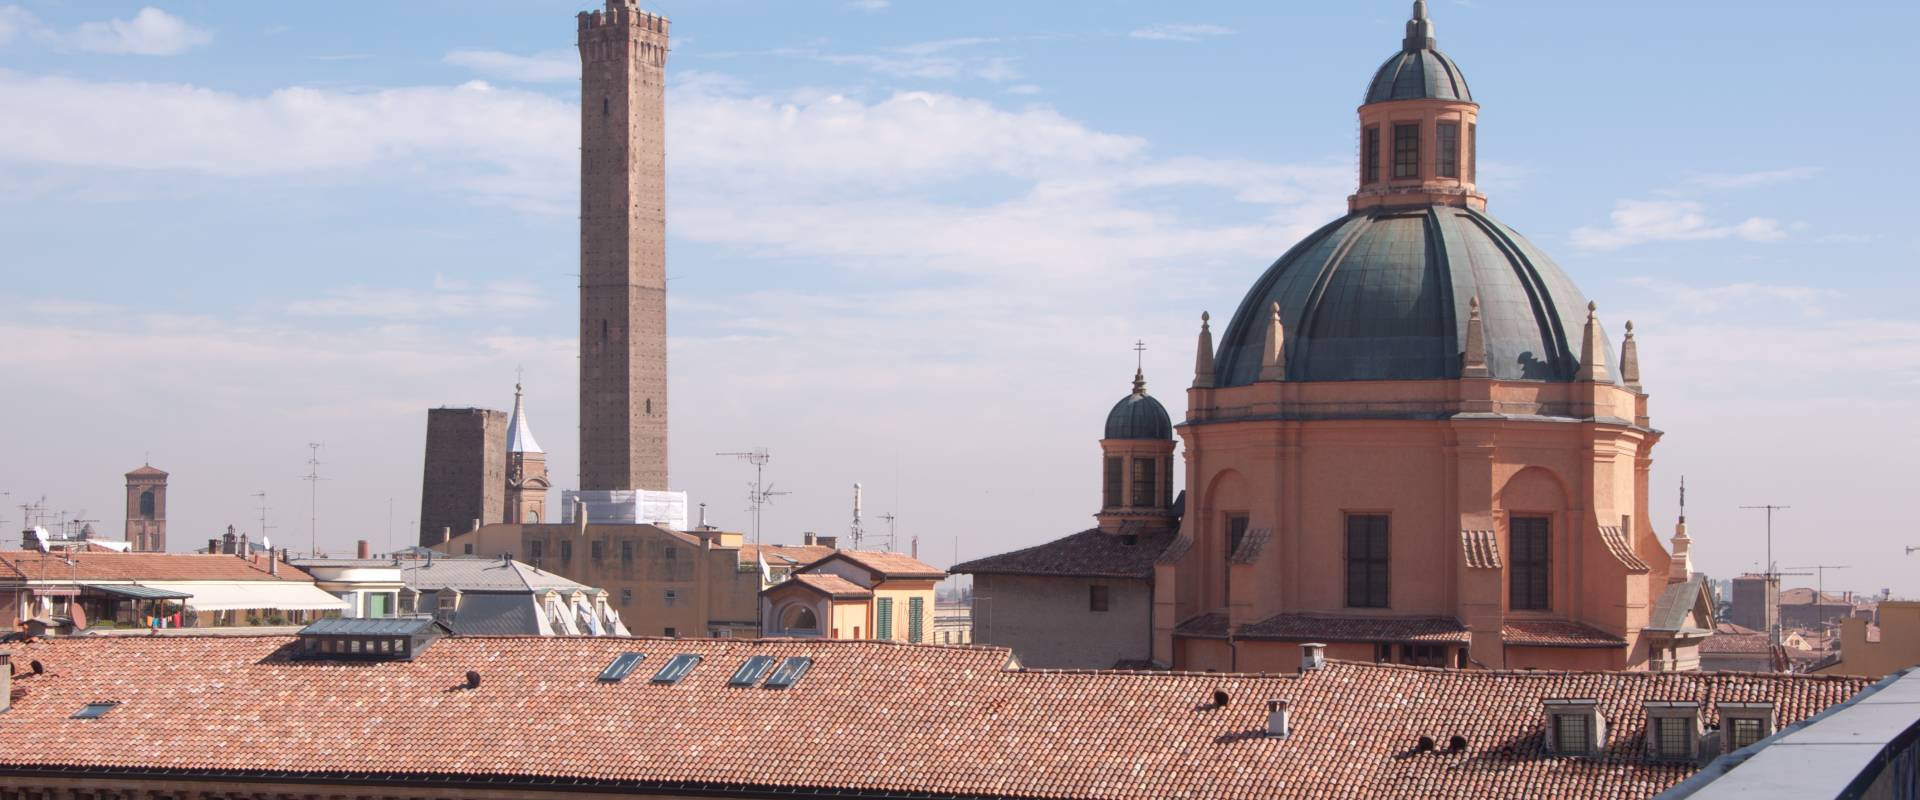 Torre Asinelli e Garisenda viste dalla terrazza di San Petronio photo by Fabio Duma